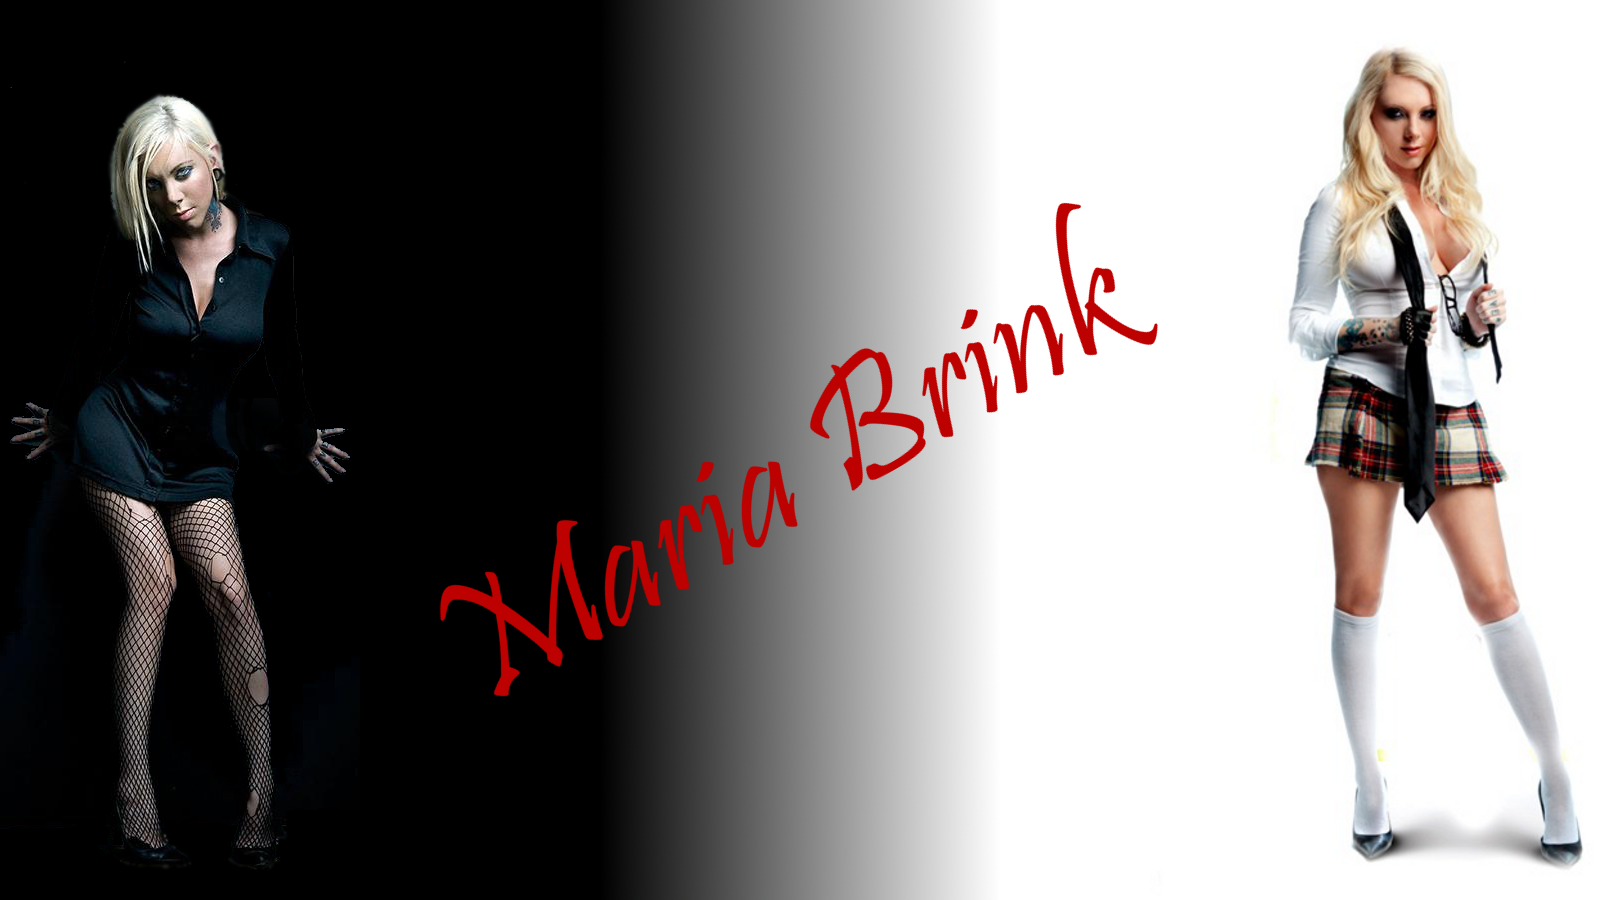 Maria brink dark and light by yaratu on